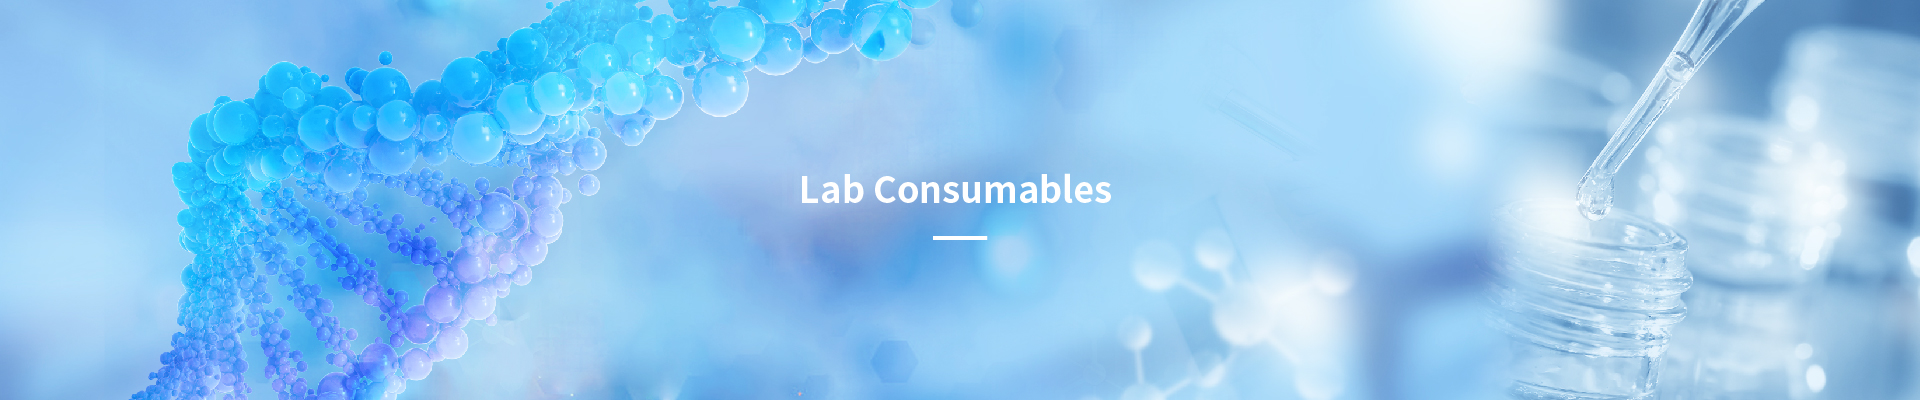 Consumibles de laboratorio - Caja de congelación